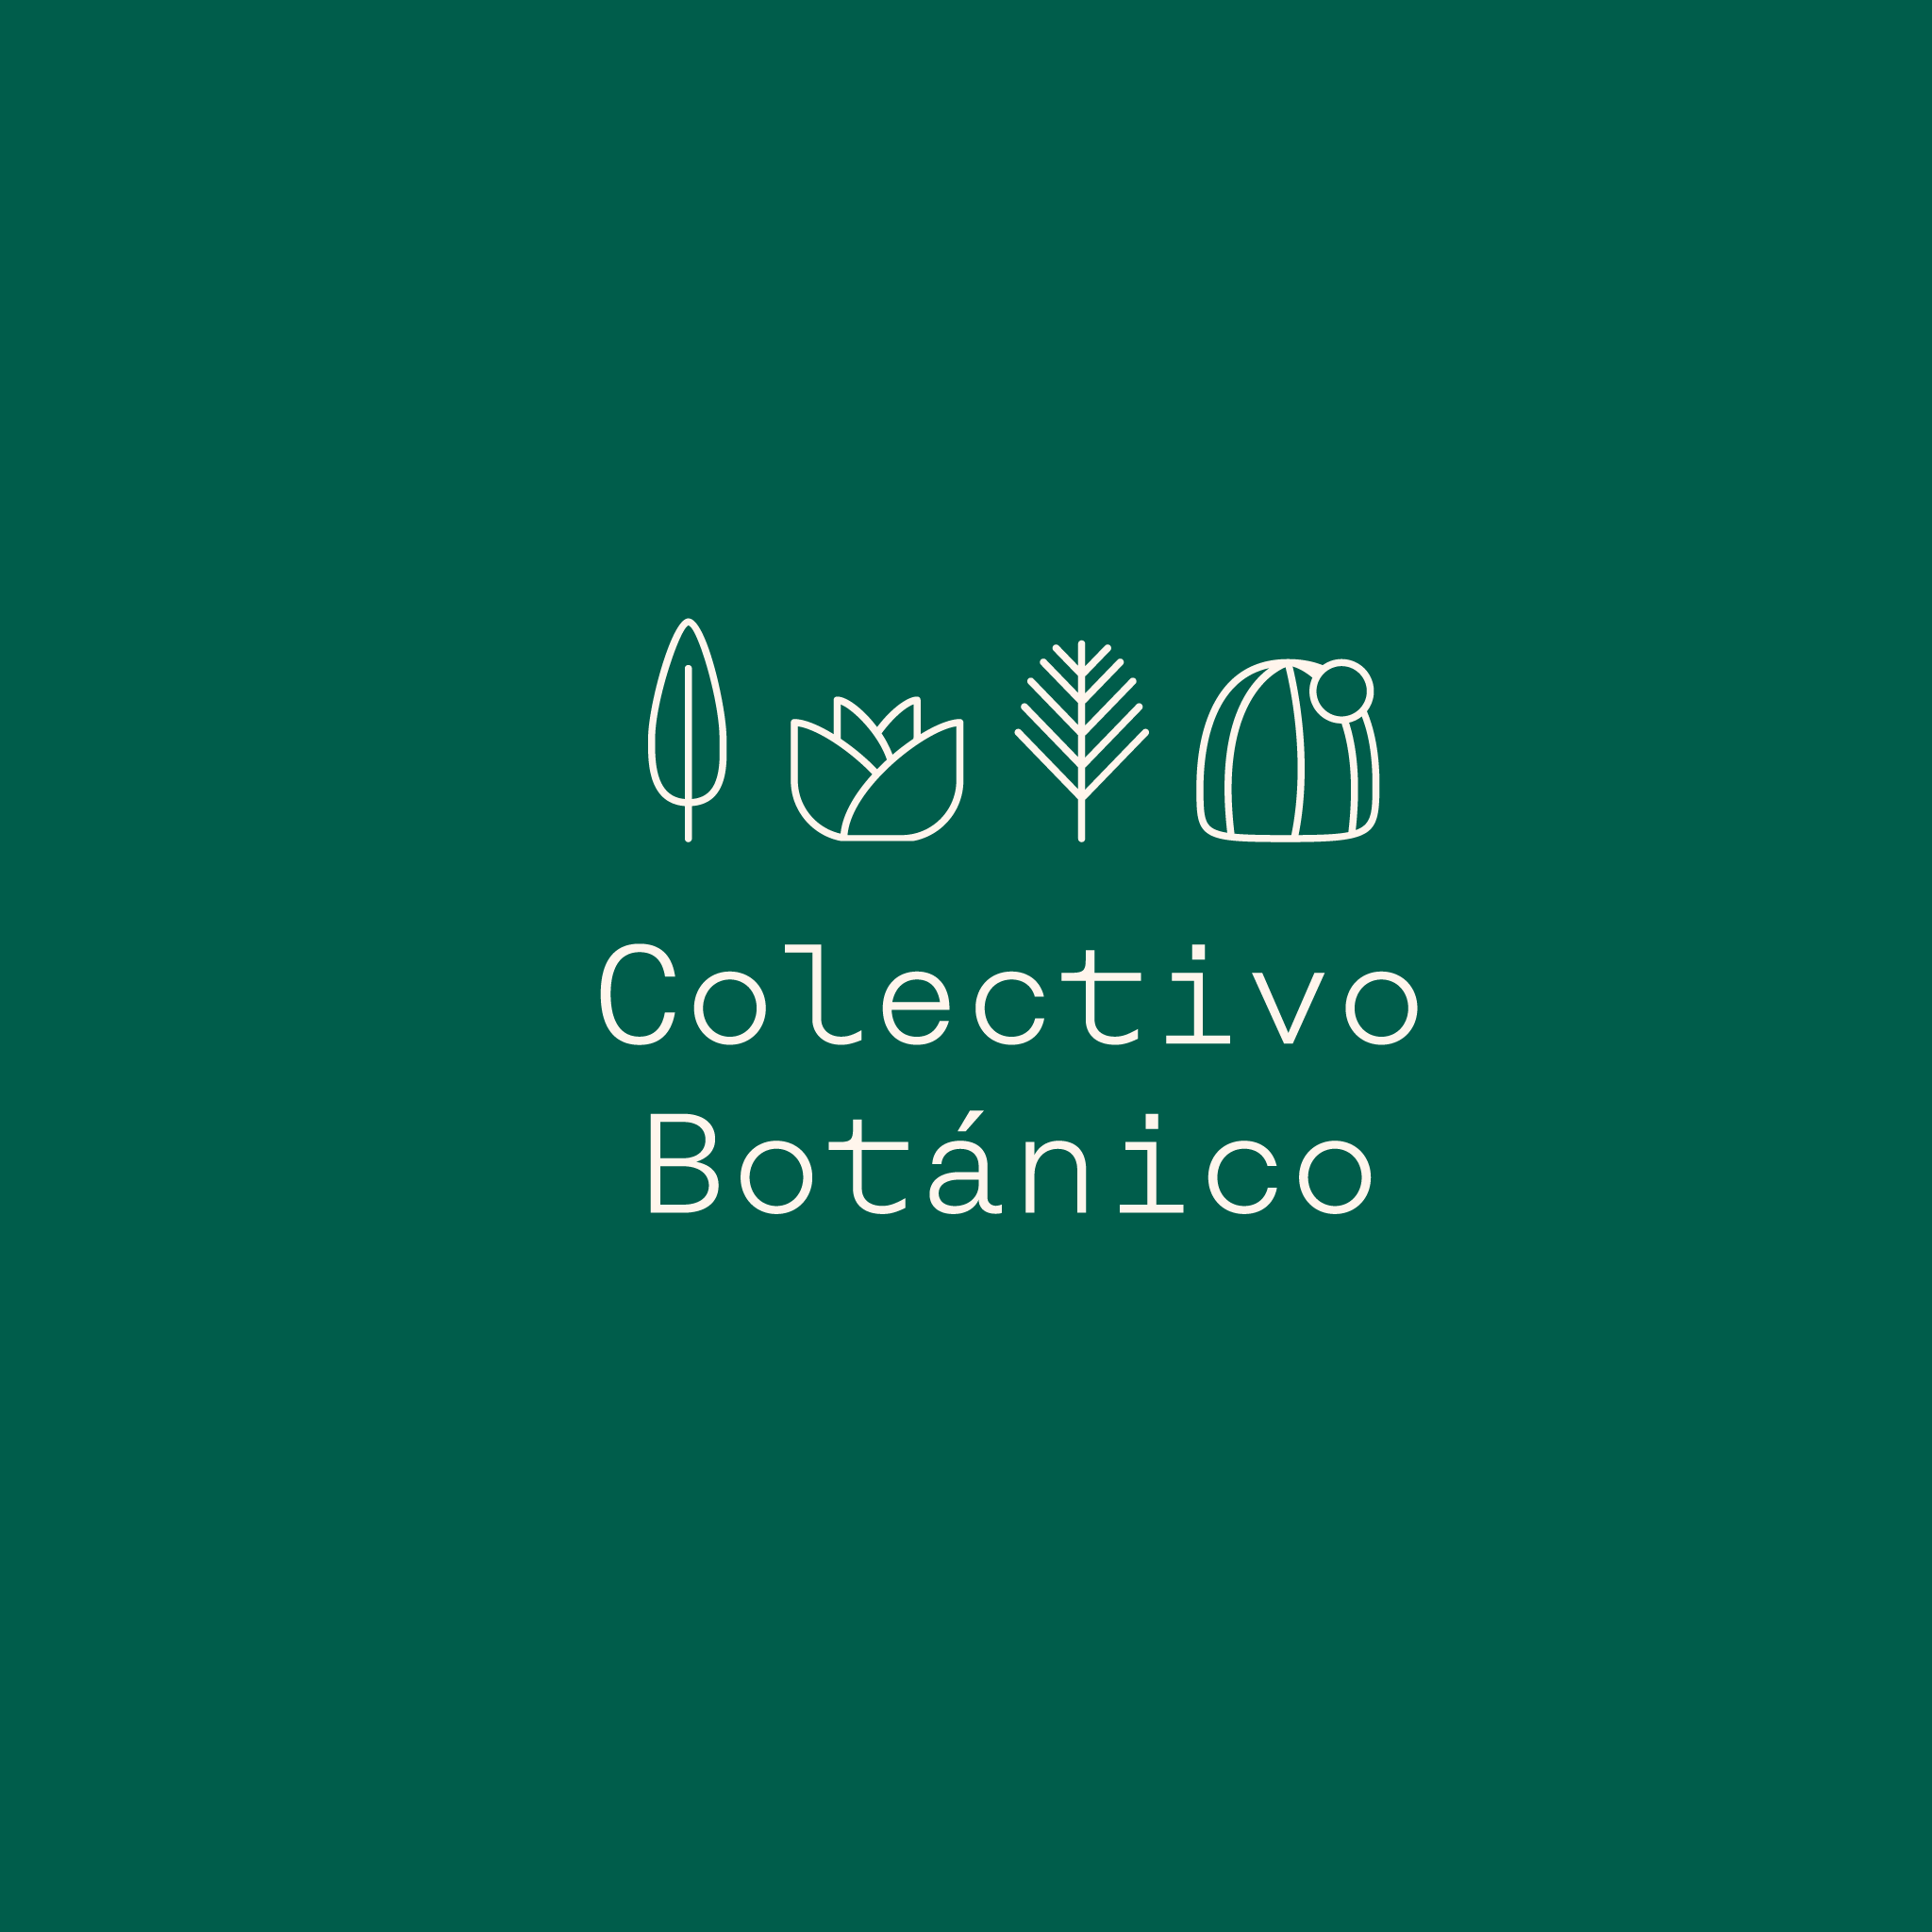 Identidad Gráfica para Colectivo Botánico 2017